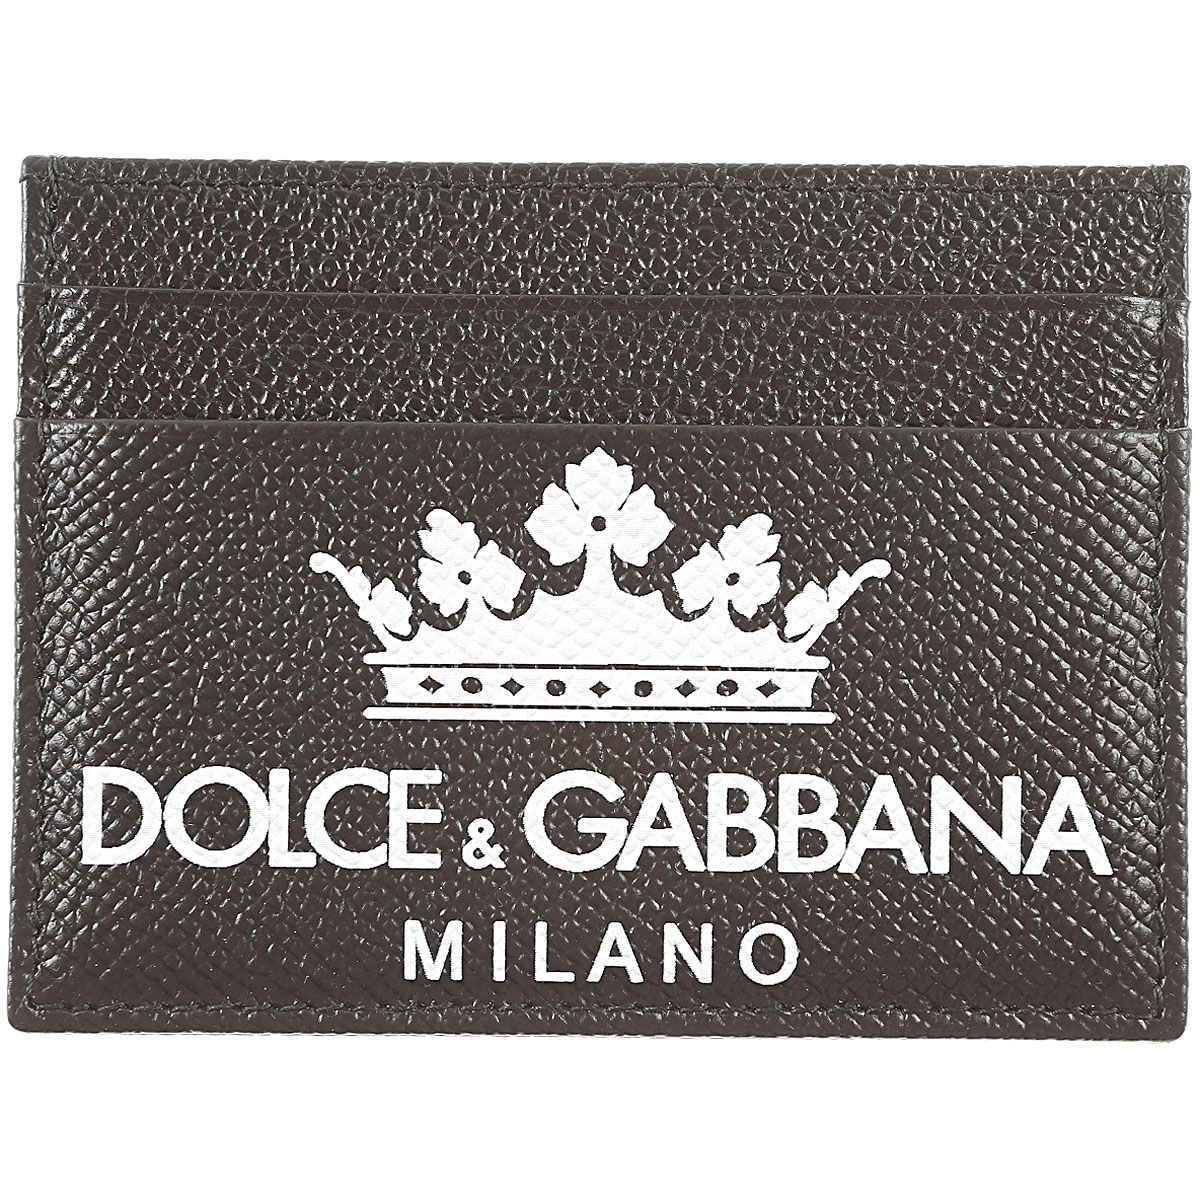 Код дольче габбана. Dolce Gabbana логотип. Корона Dolce Gabbana логотип. Логотипы Дольче Габбана фирменные. Пакет Дольче Габбана.